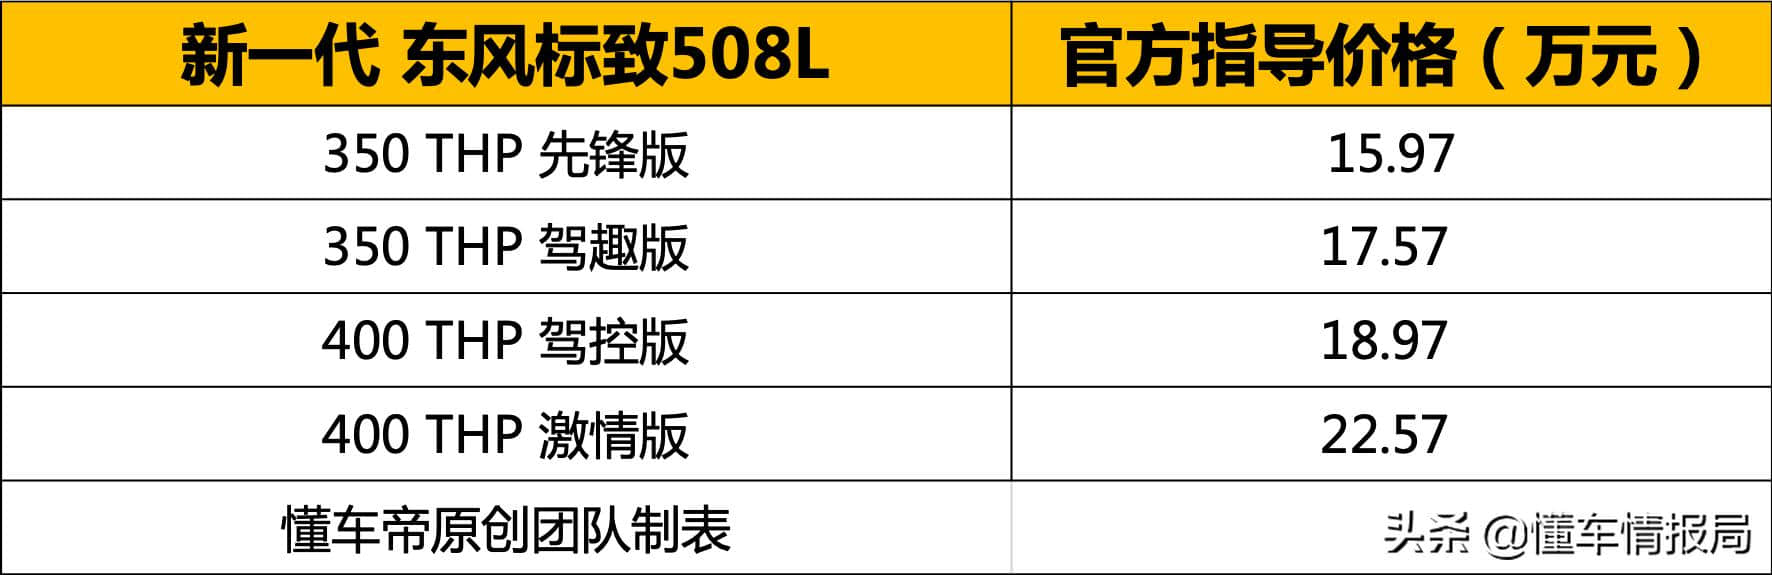 15.97万起售 东风标致508L上市 “狮吼”前脸很惊艳 还有爱信8AT